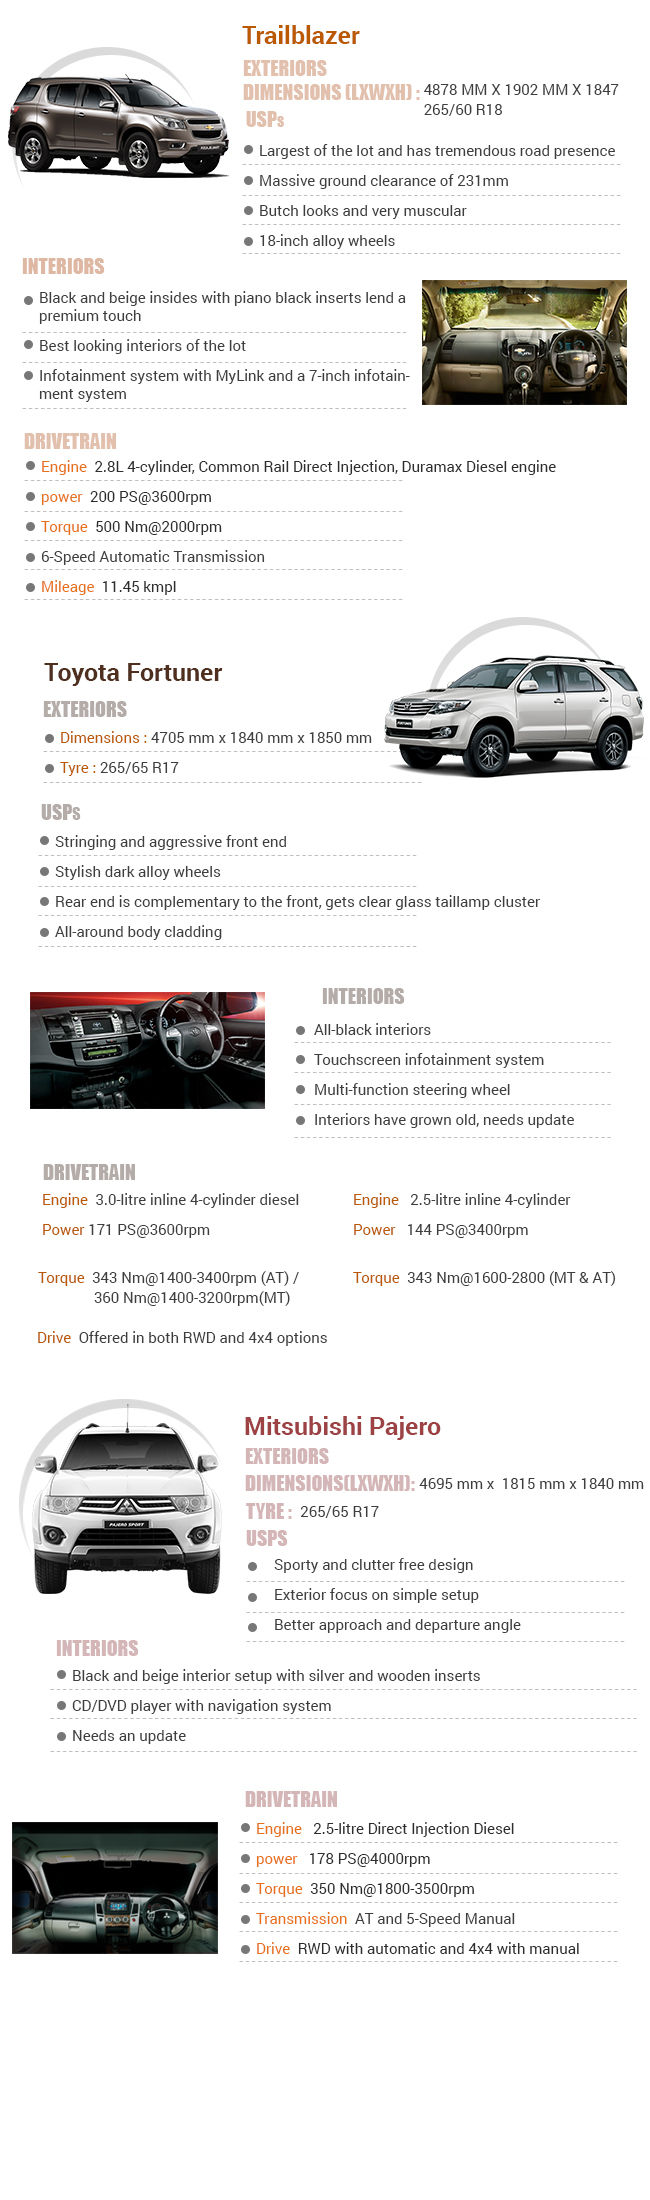 Chevrolet Trailblazer Vs Toyota Fortuner Vs Mitsubishi Pajero Infographic